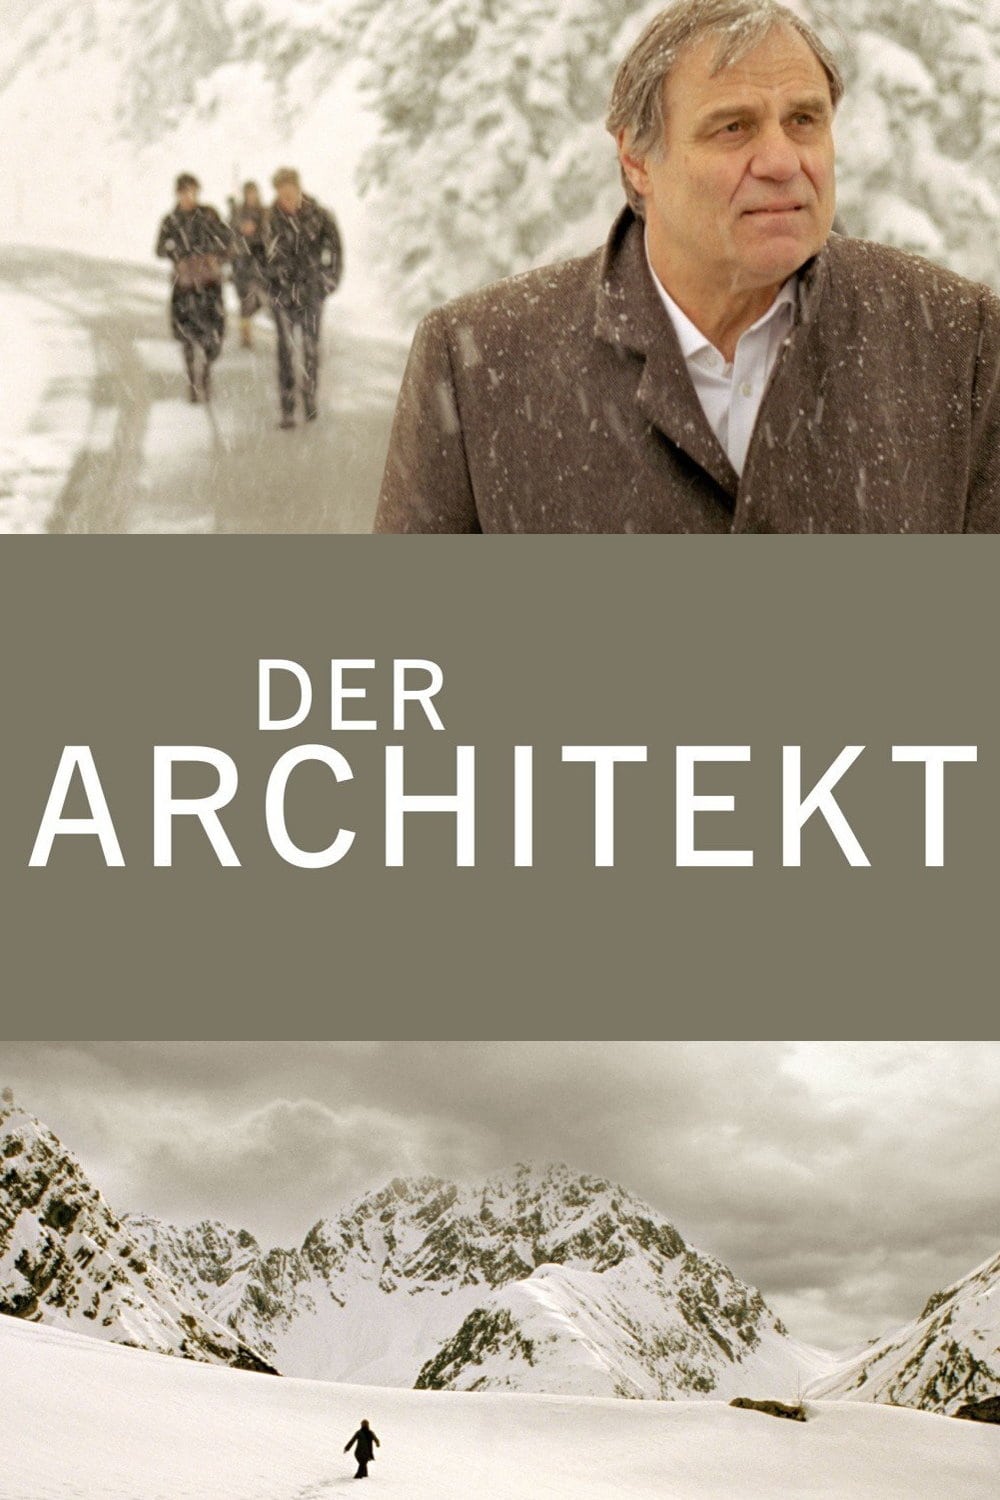 Plakat von "Der Architekt"